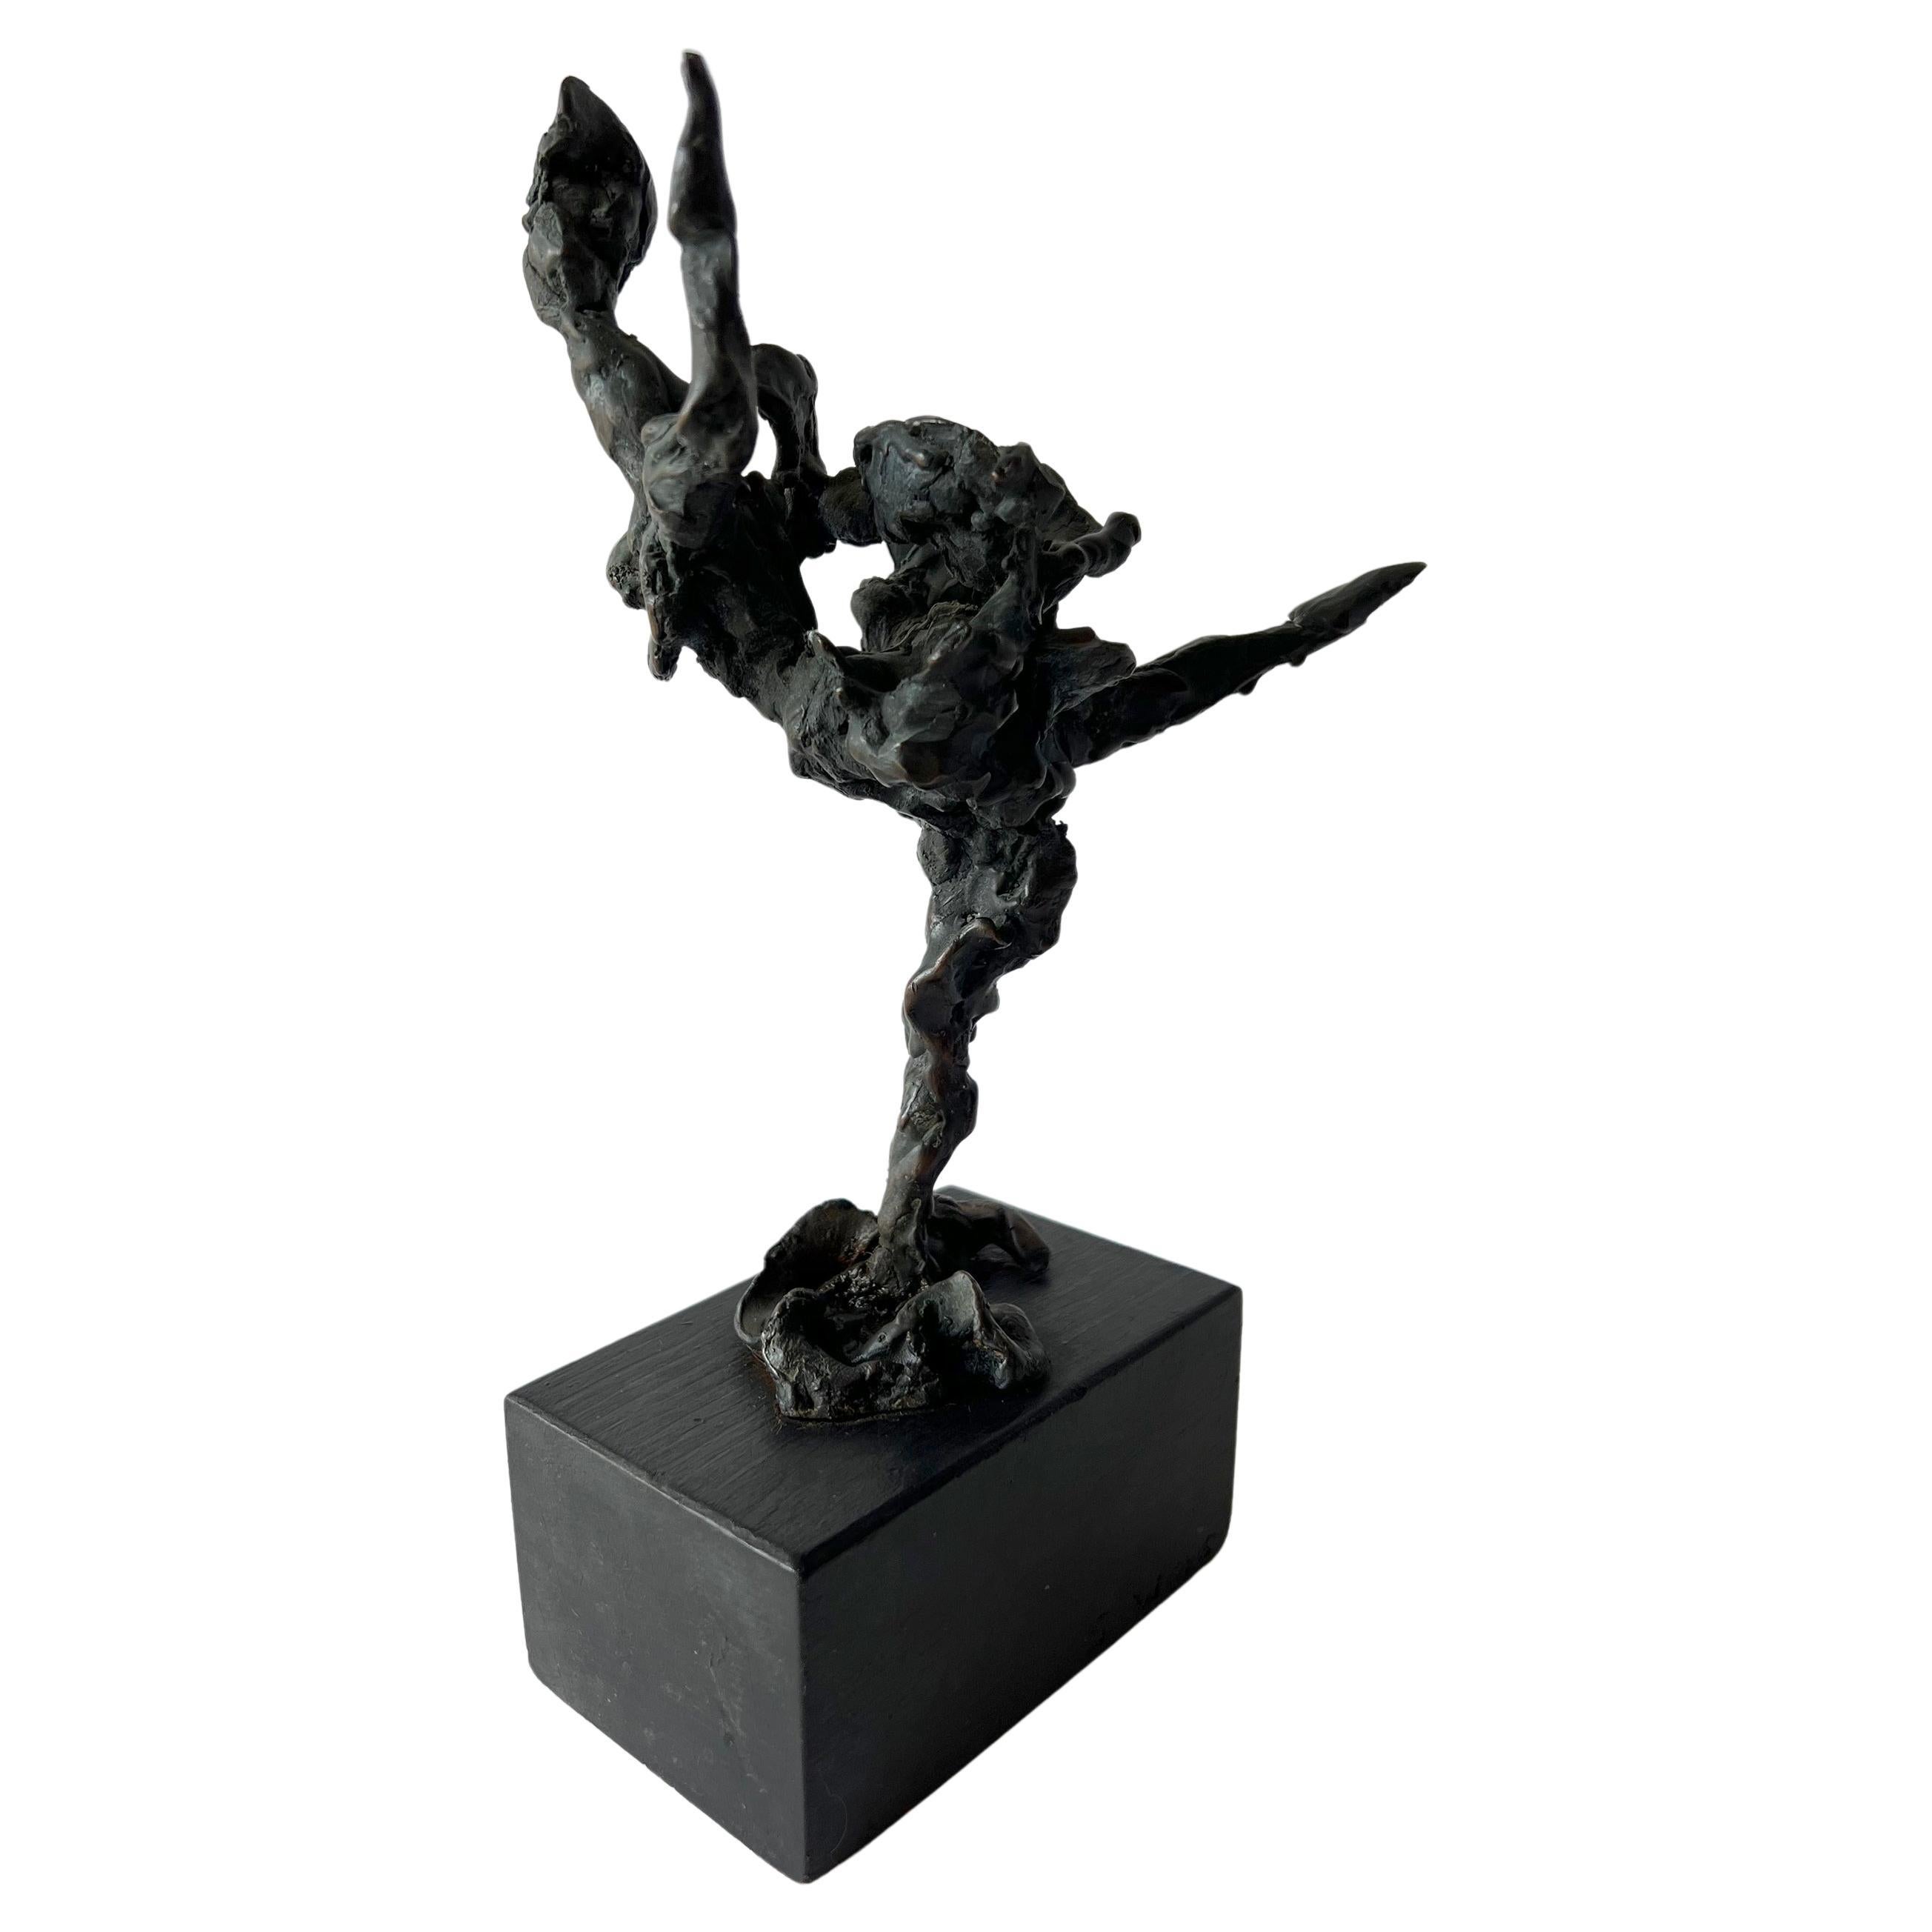 Handgefertigte Bronzeskulptur einer Tänzerin, geschaffen von der aufgeführten Künstlerin Sylvia Weiss aus Chicago, Illinois. Die Skulptur misst 9,5